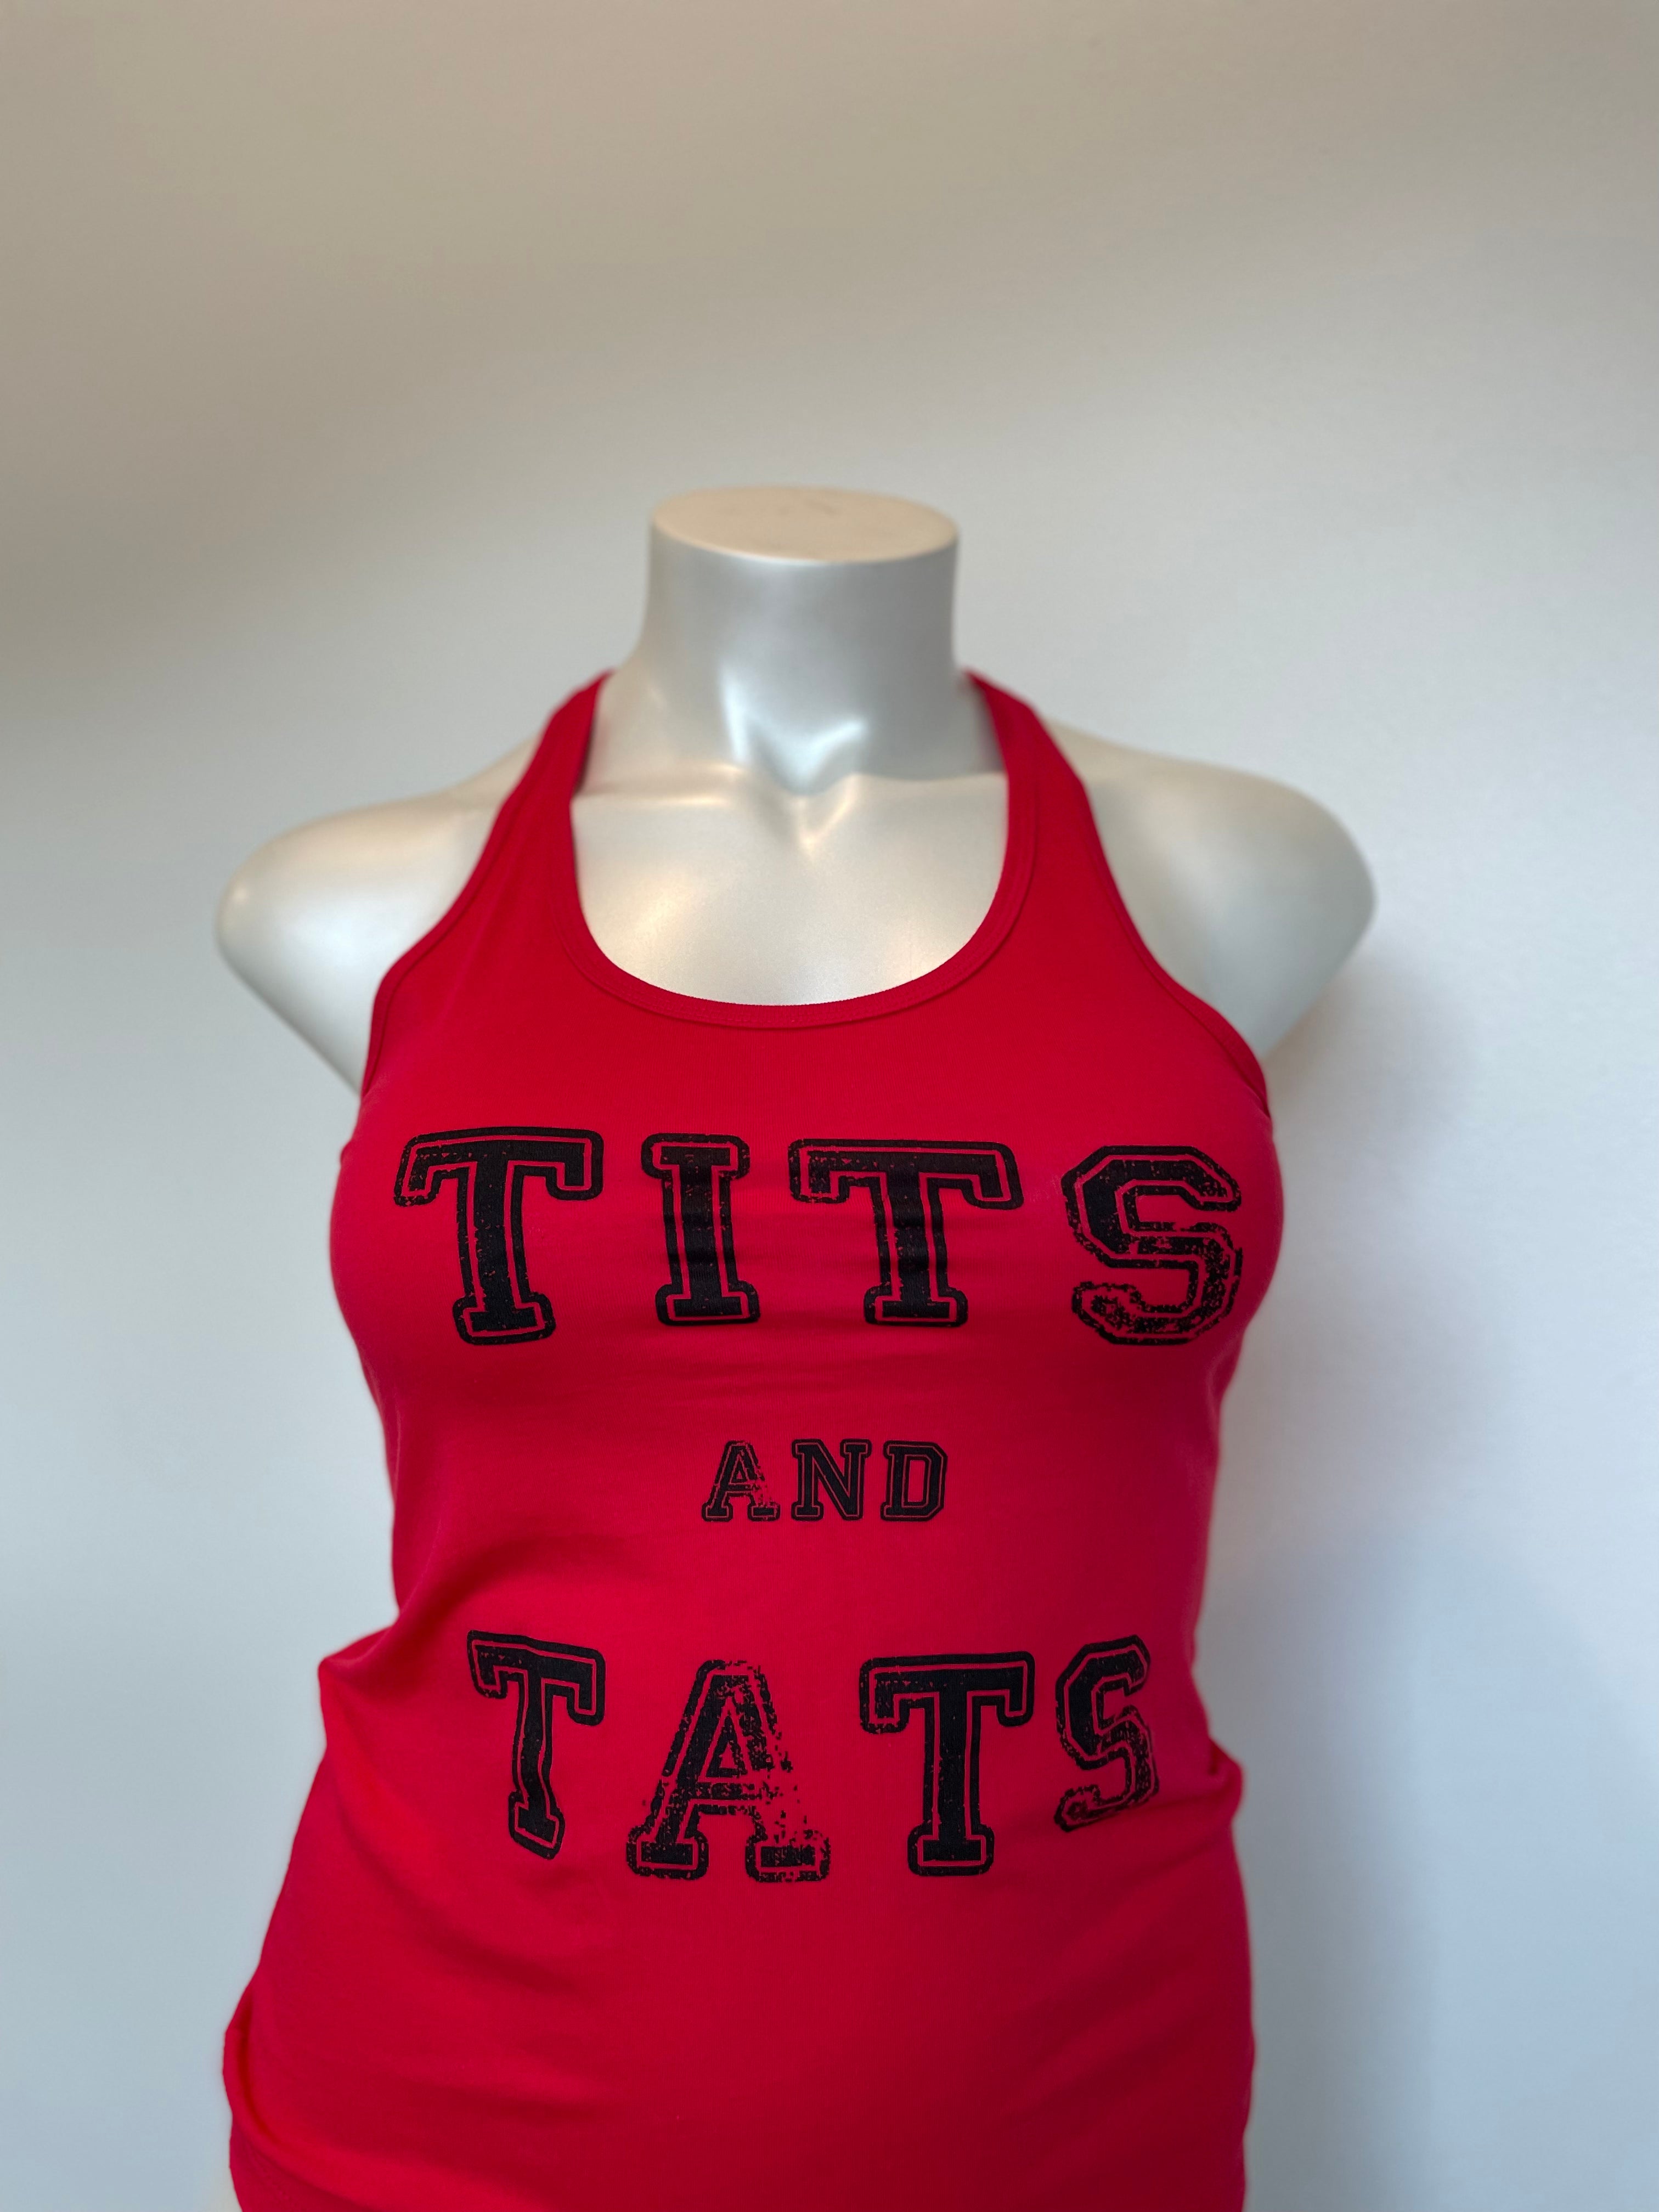 Tits and Tats